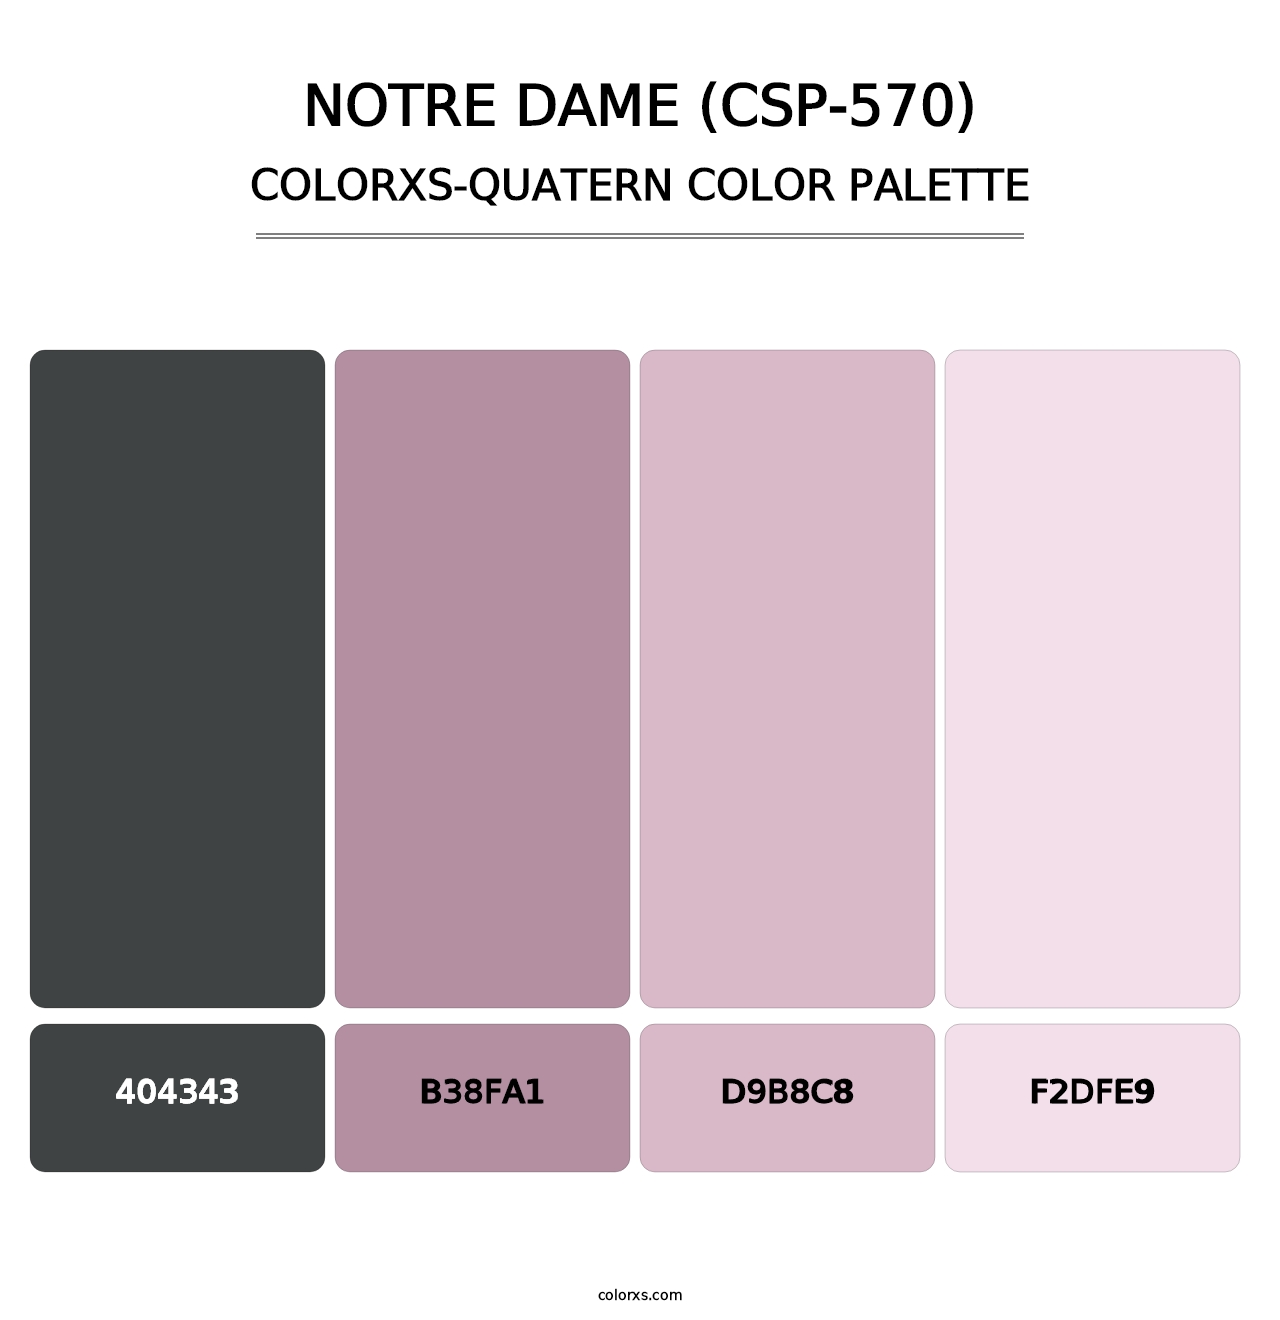 Notre Dame (CSP-570) - Colorxs Quatern Palette